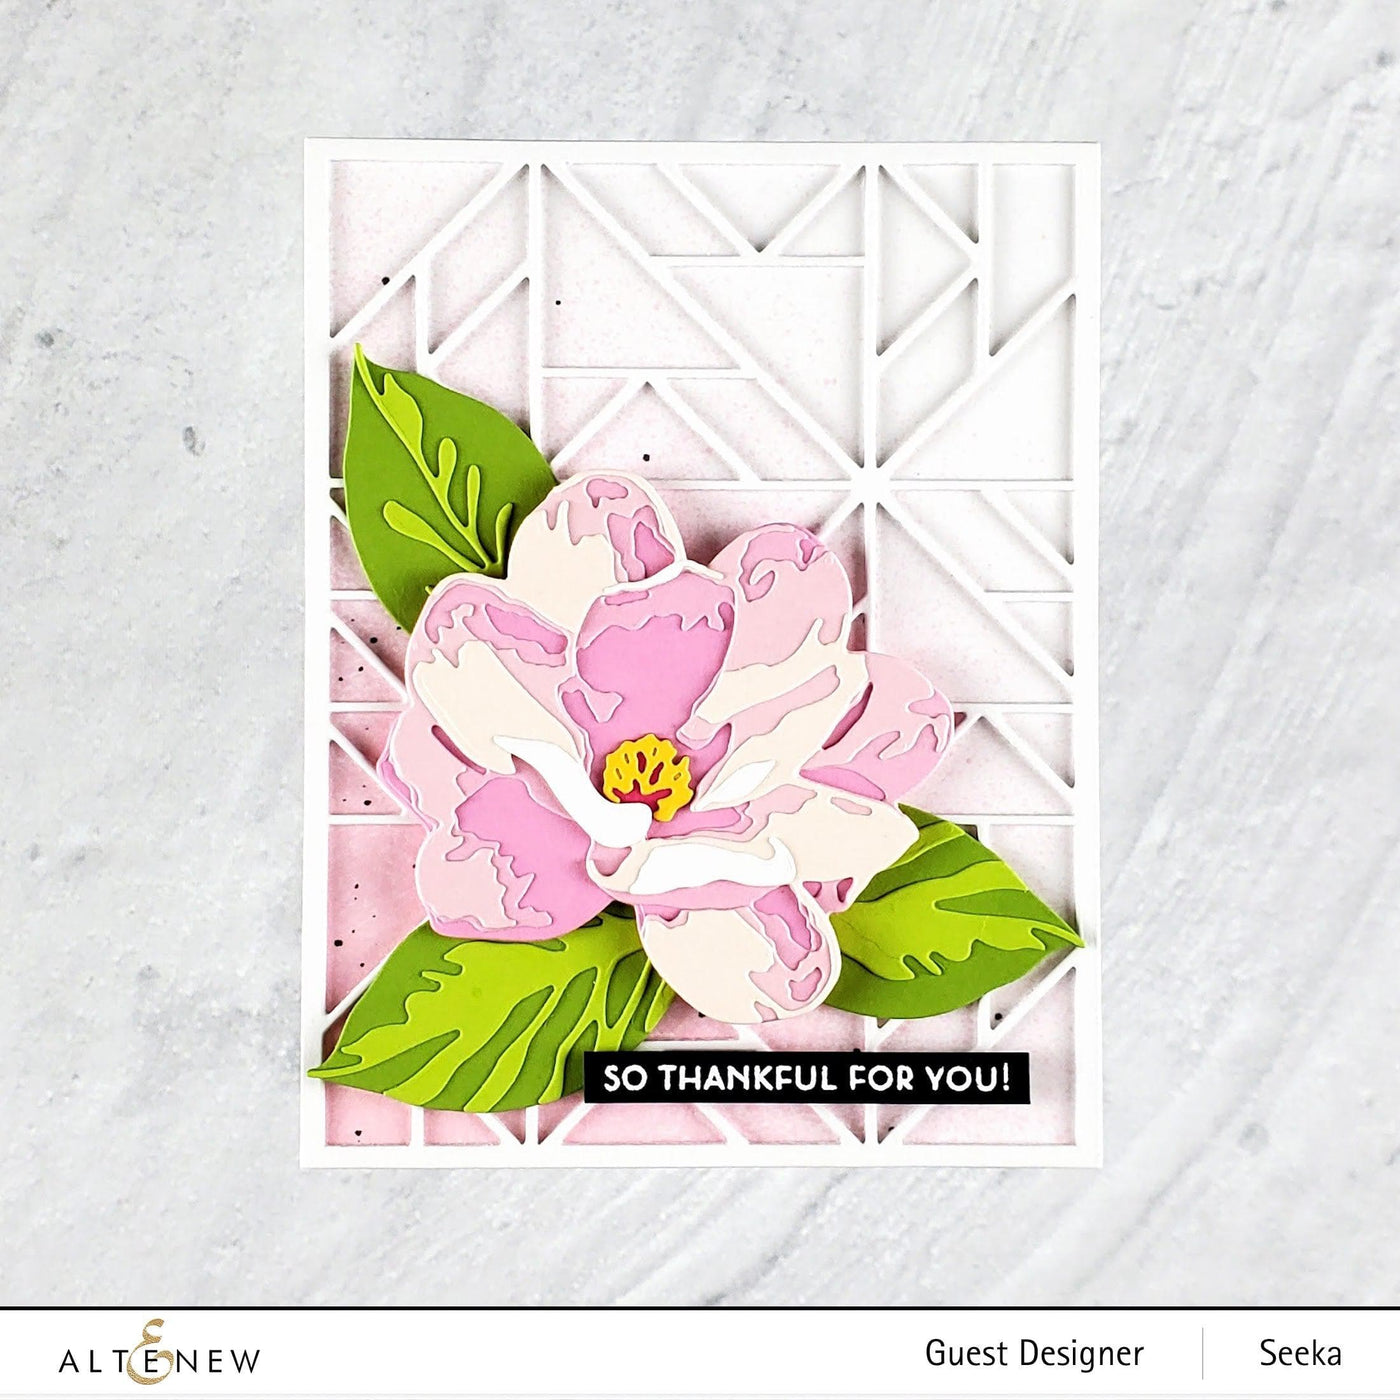 Altenew Craft-A-Flower: Magnolia Layering Die Set